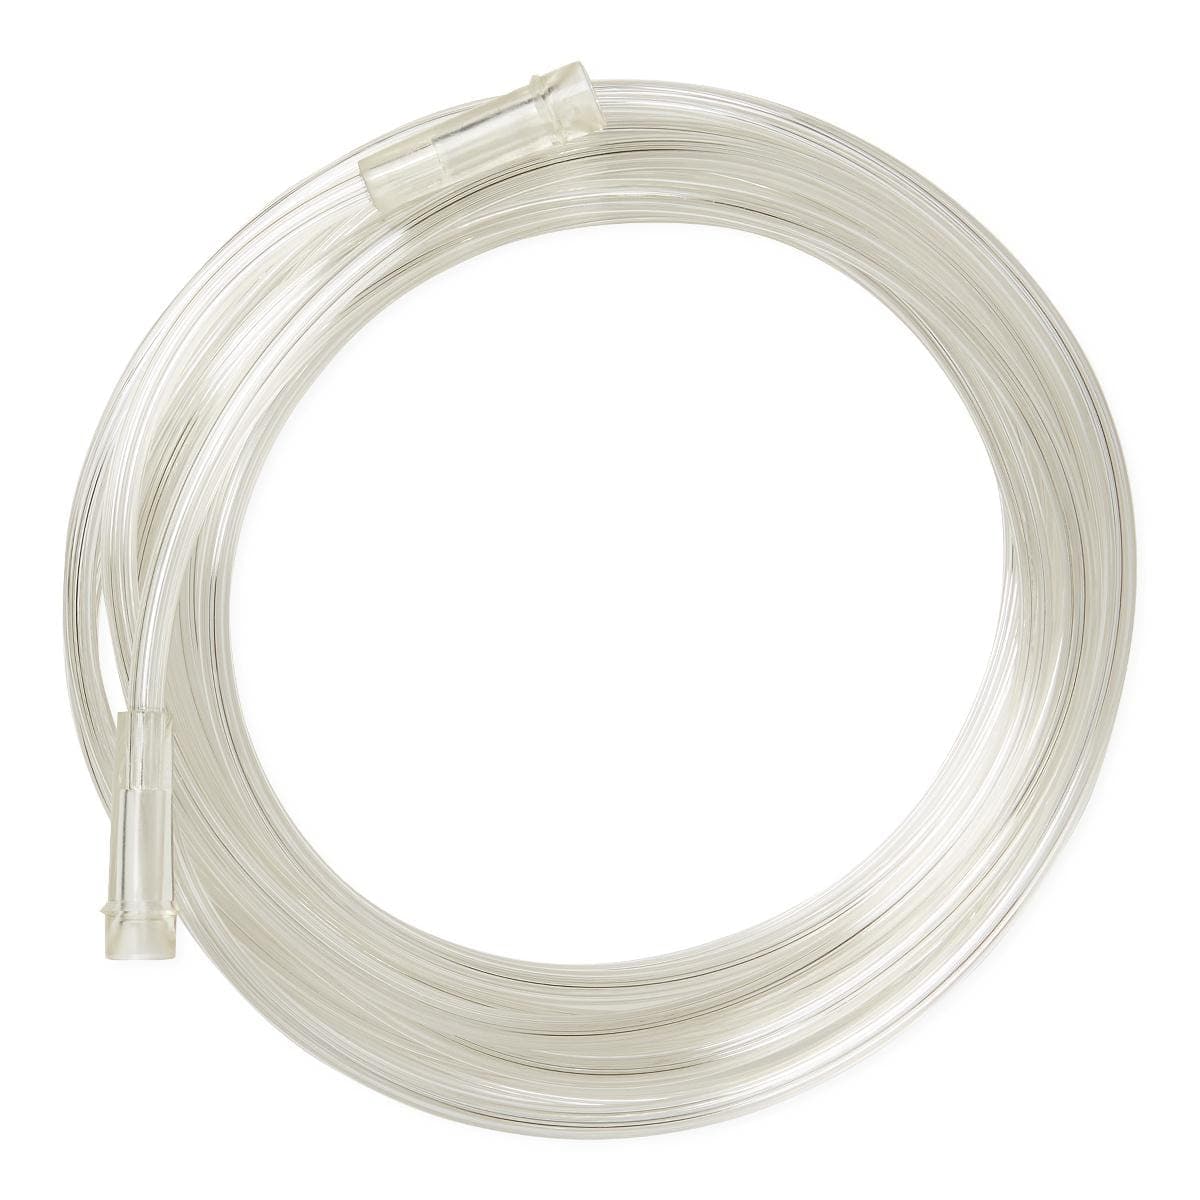 Medline Medline Clear Oxygen Tubing with Standard Connector HCS4525